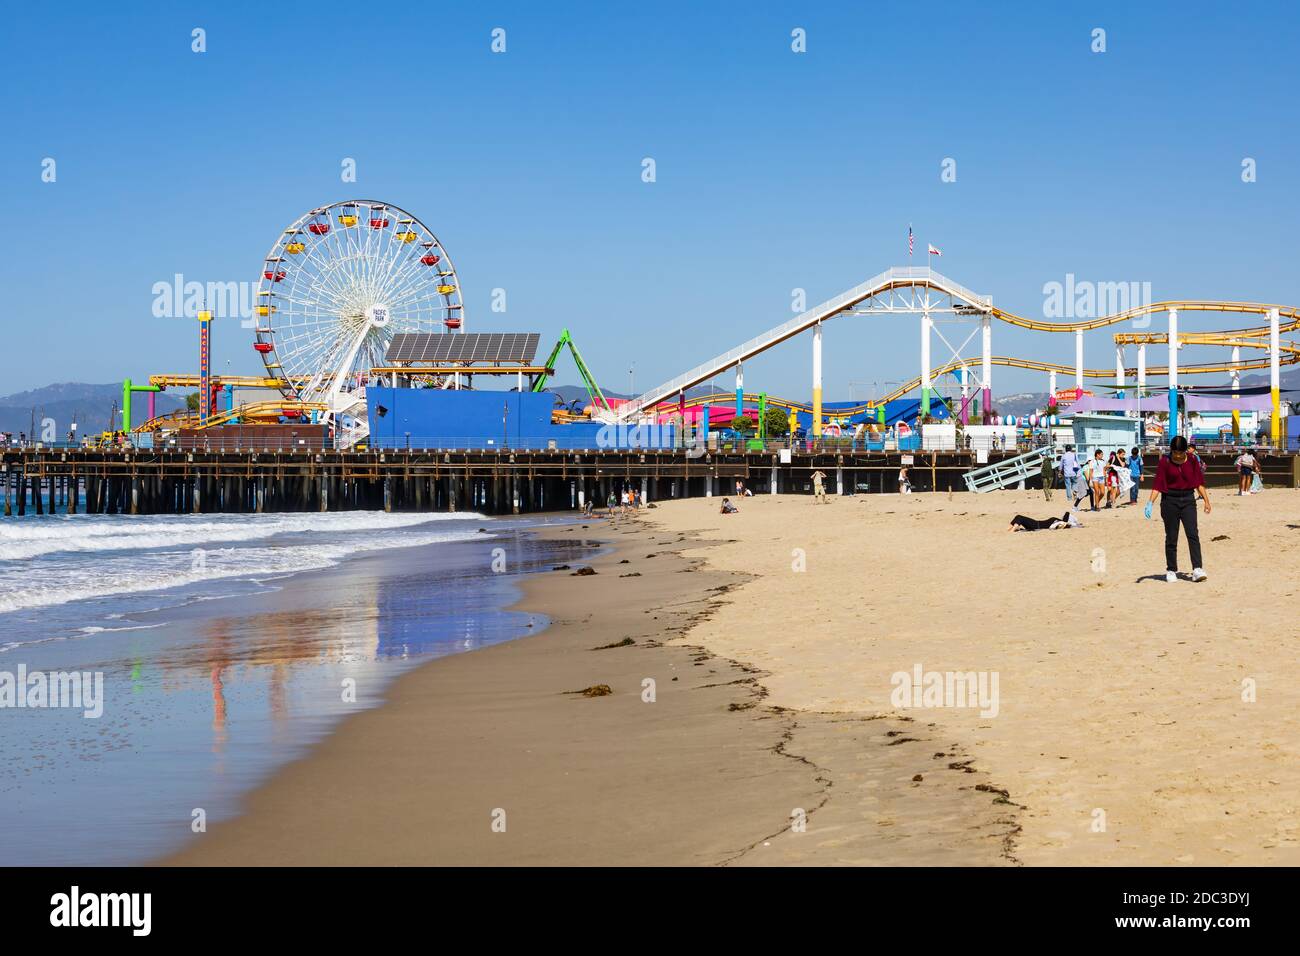 Parque de diversiones Pacific. Montaña rusa y rueda grande. Santa Monica Pier and beach, Santa Monica, California, Estados Unidos de América Foto de stock